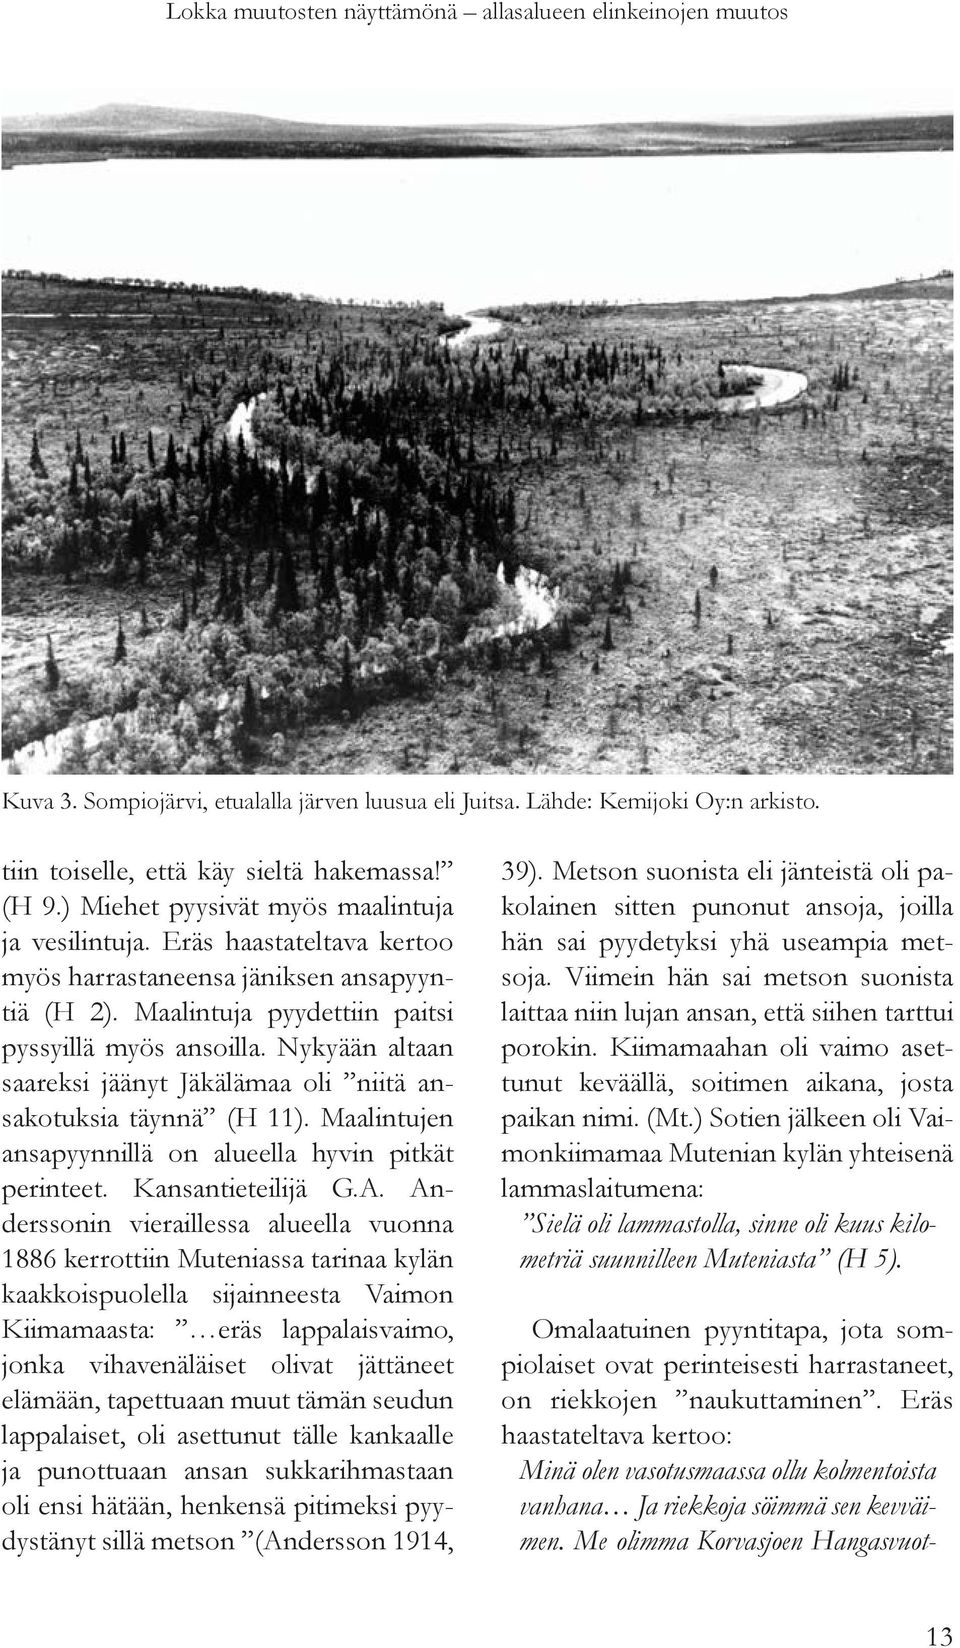 Nykyään altaan saareksi jäänyt Jäkälämaa oli niitä ansakotuksia täynnä (H 11). Maalintujen ansapyynnillä on alueella hyvin pitkät perinteet. Kansantieteilijä G.A.